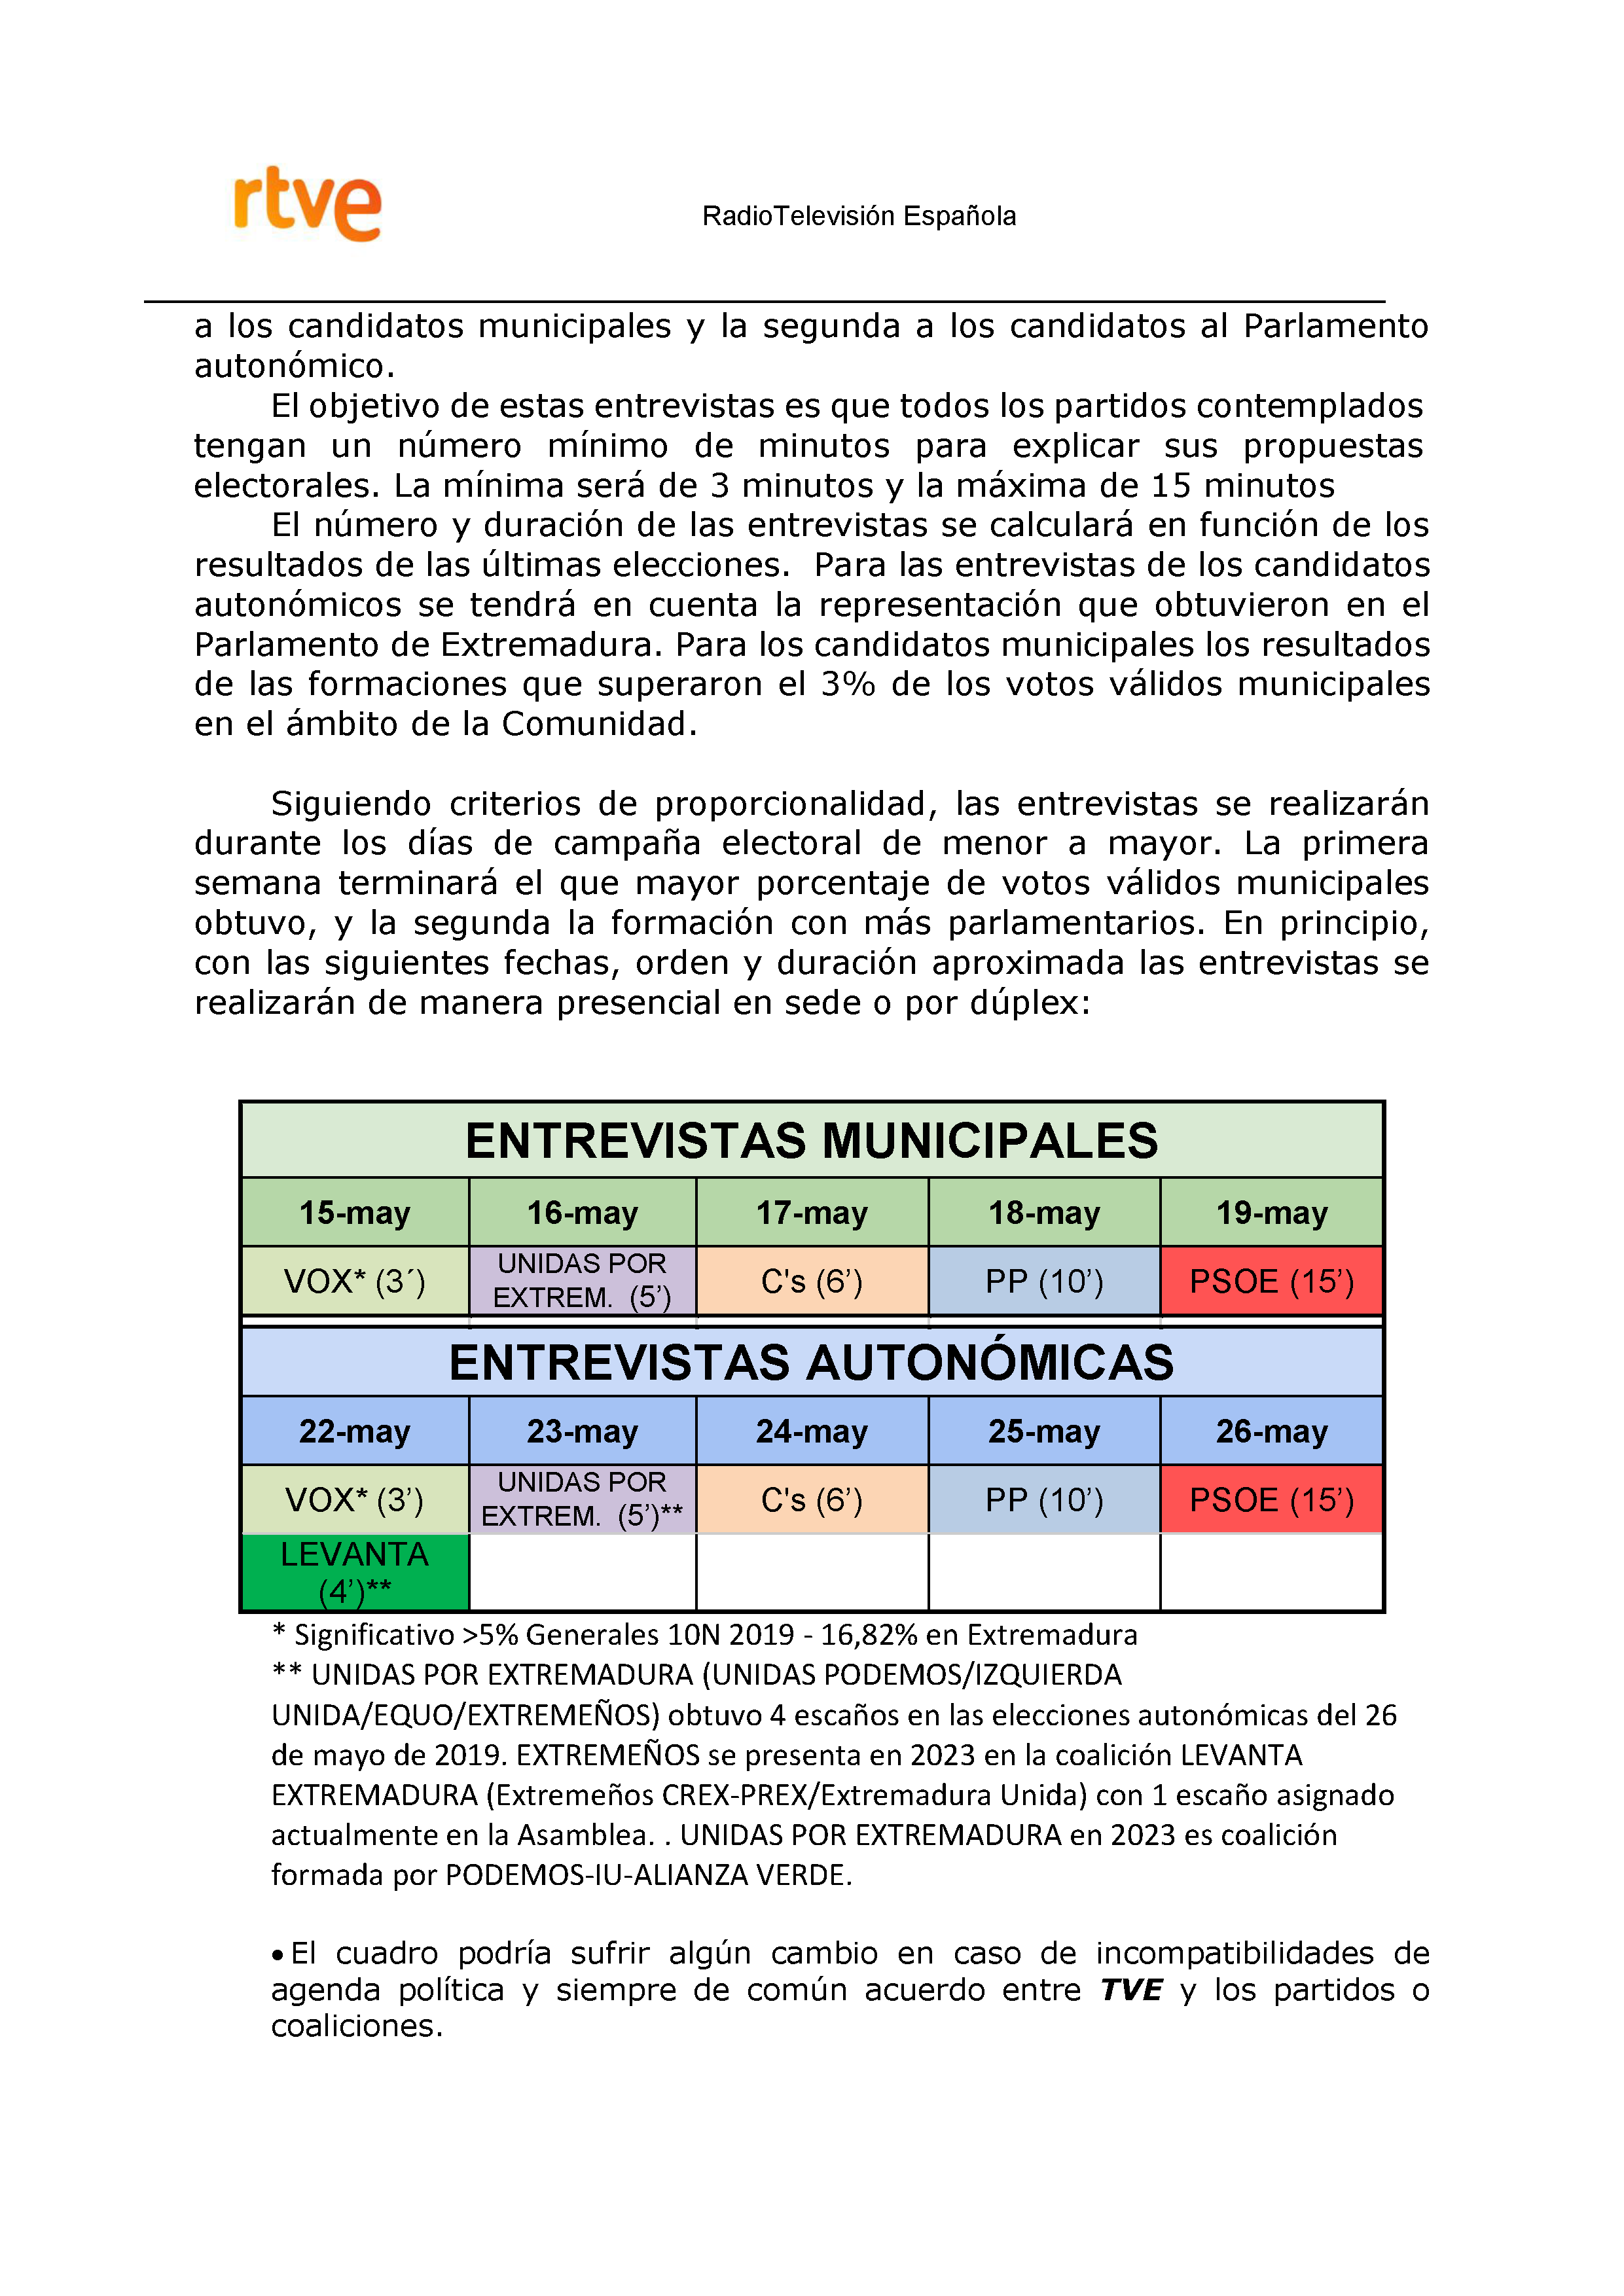 PLAN DE COBERTURA INFORMATIVA RTVE en Extremadura ELECCIONES MUNICIPALES Y AUTONÓMICAS Pag 7